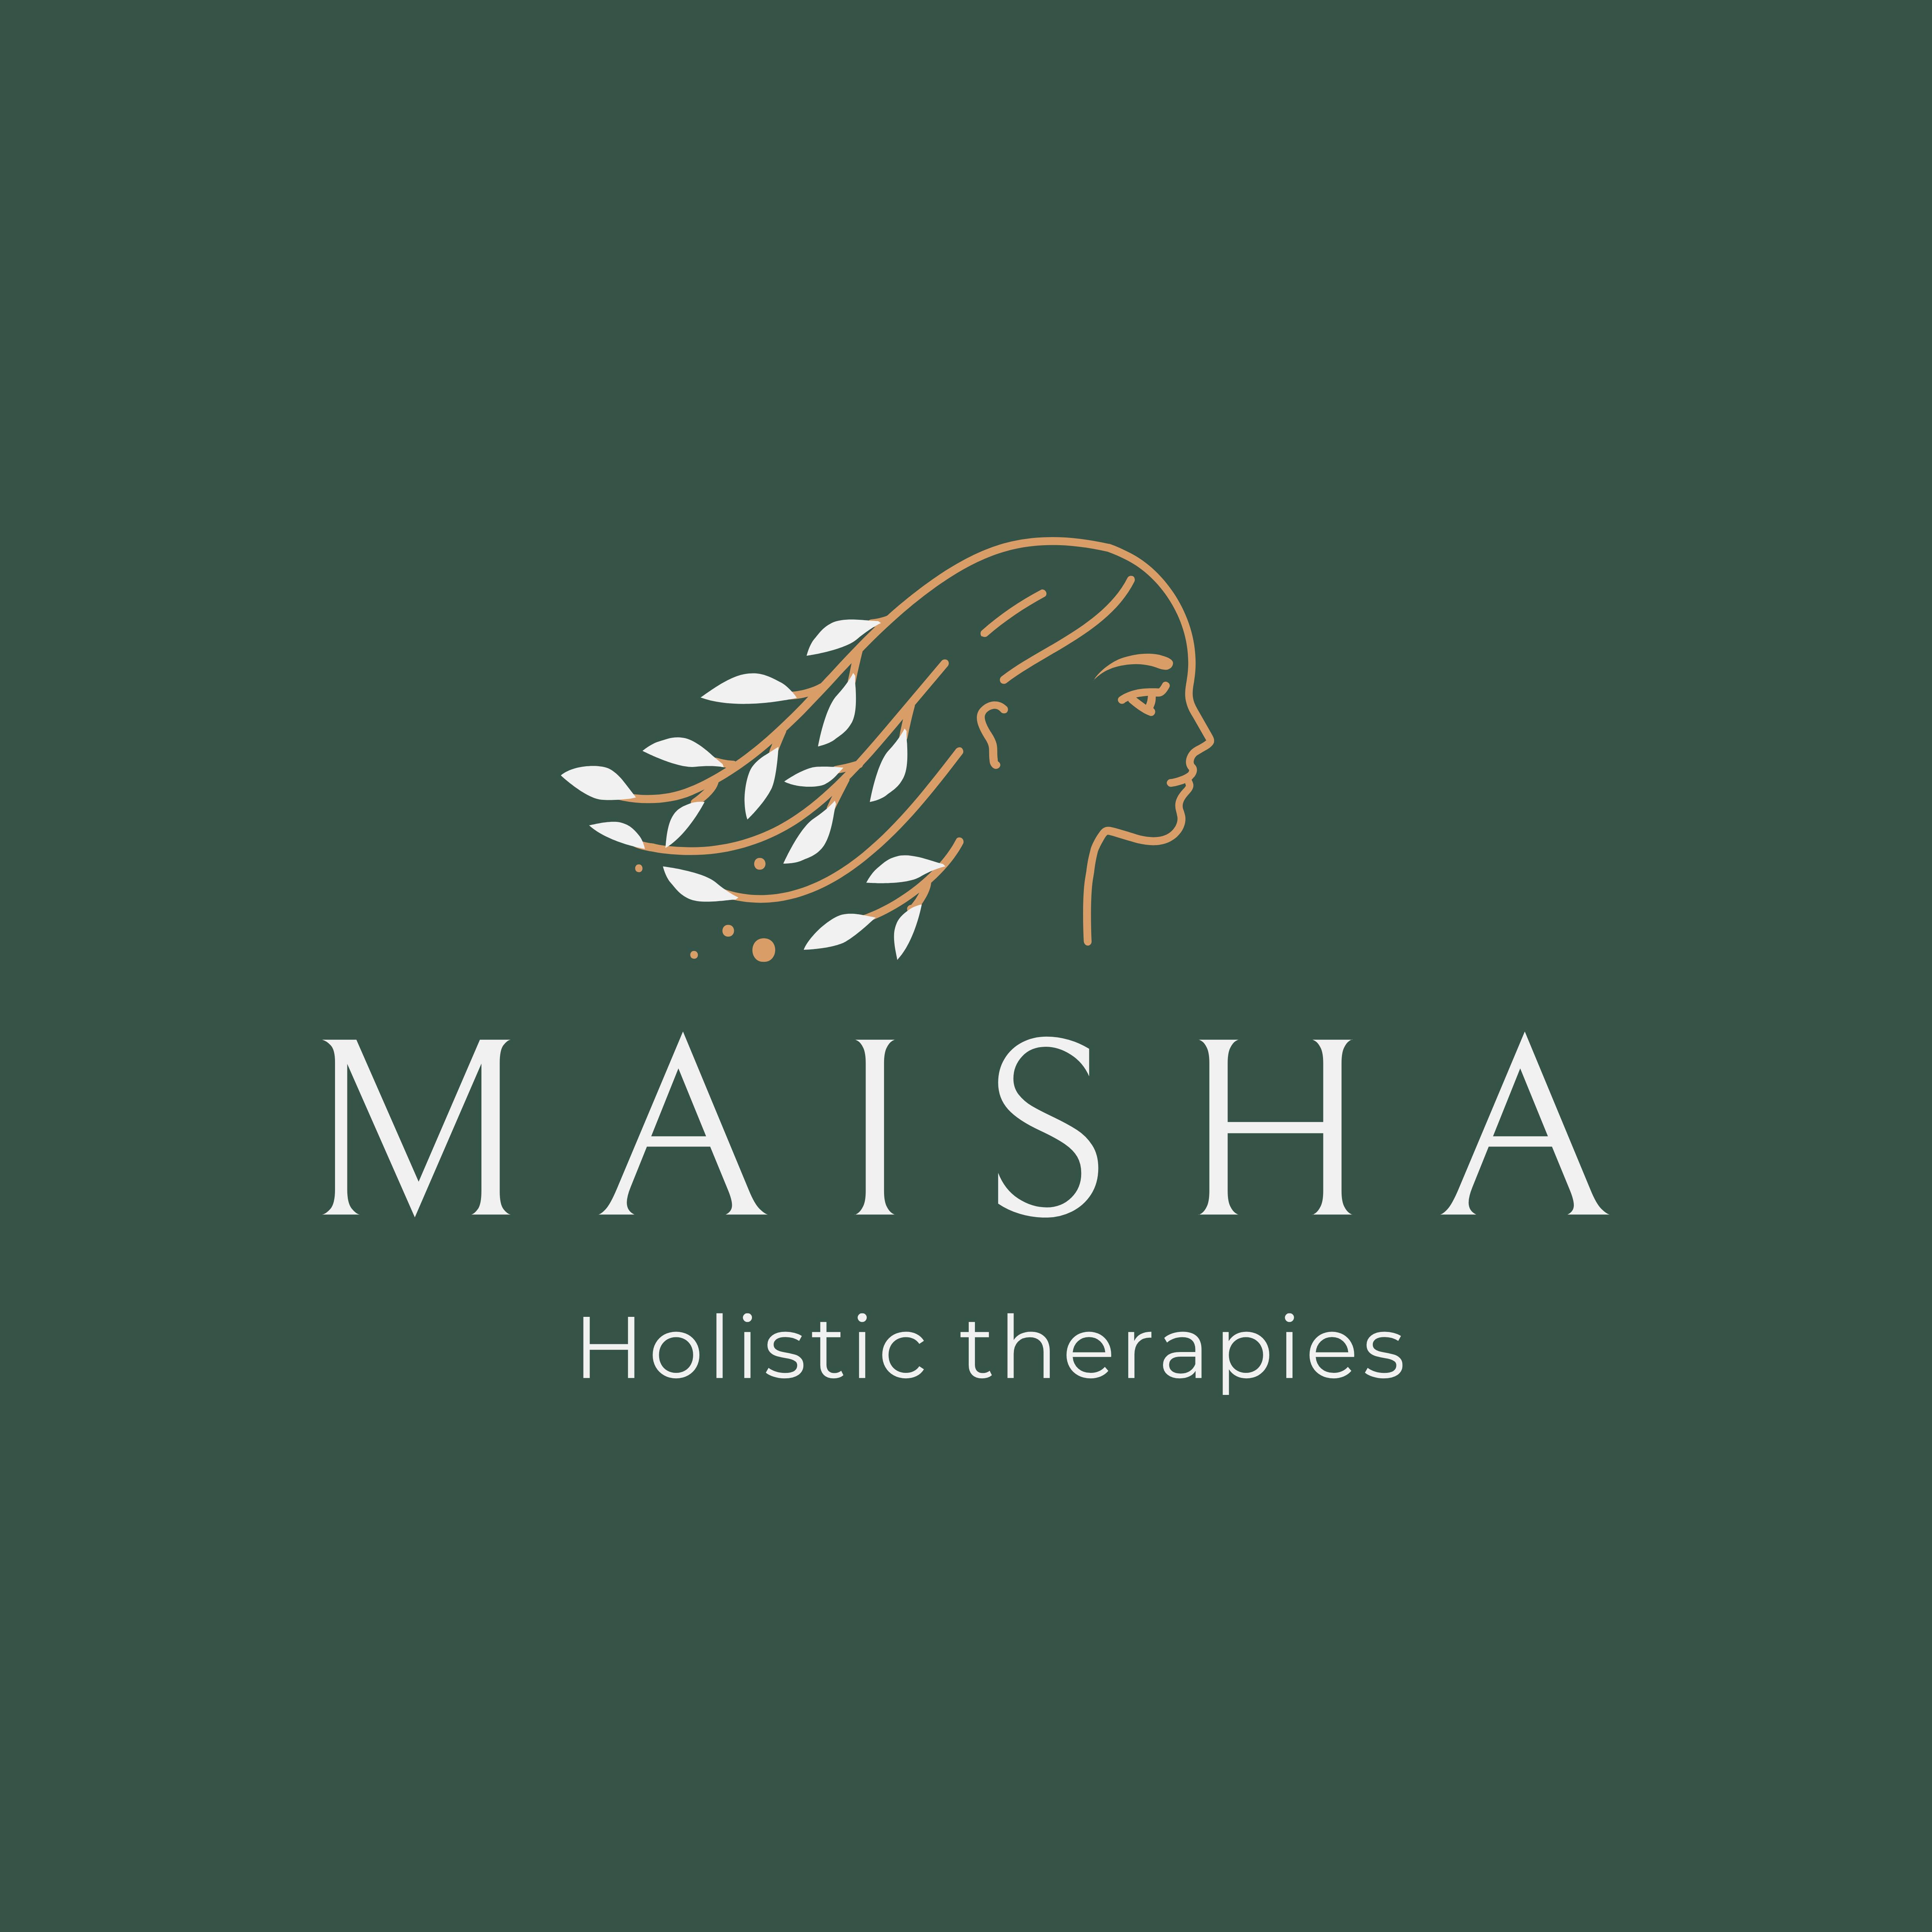 Maisha Holistic Therapies